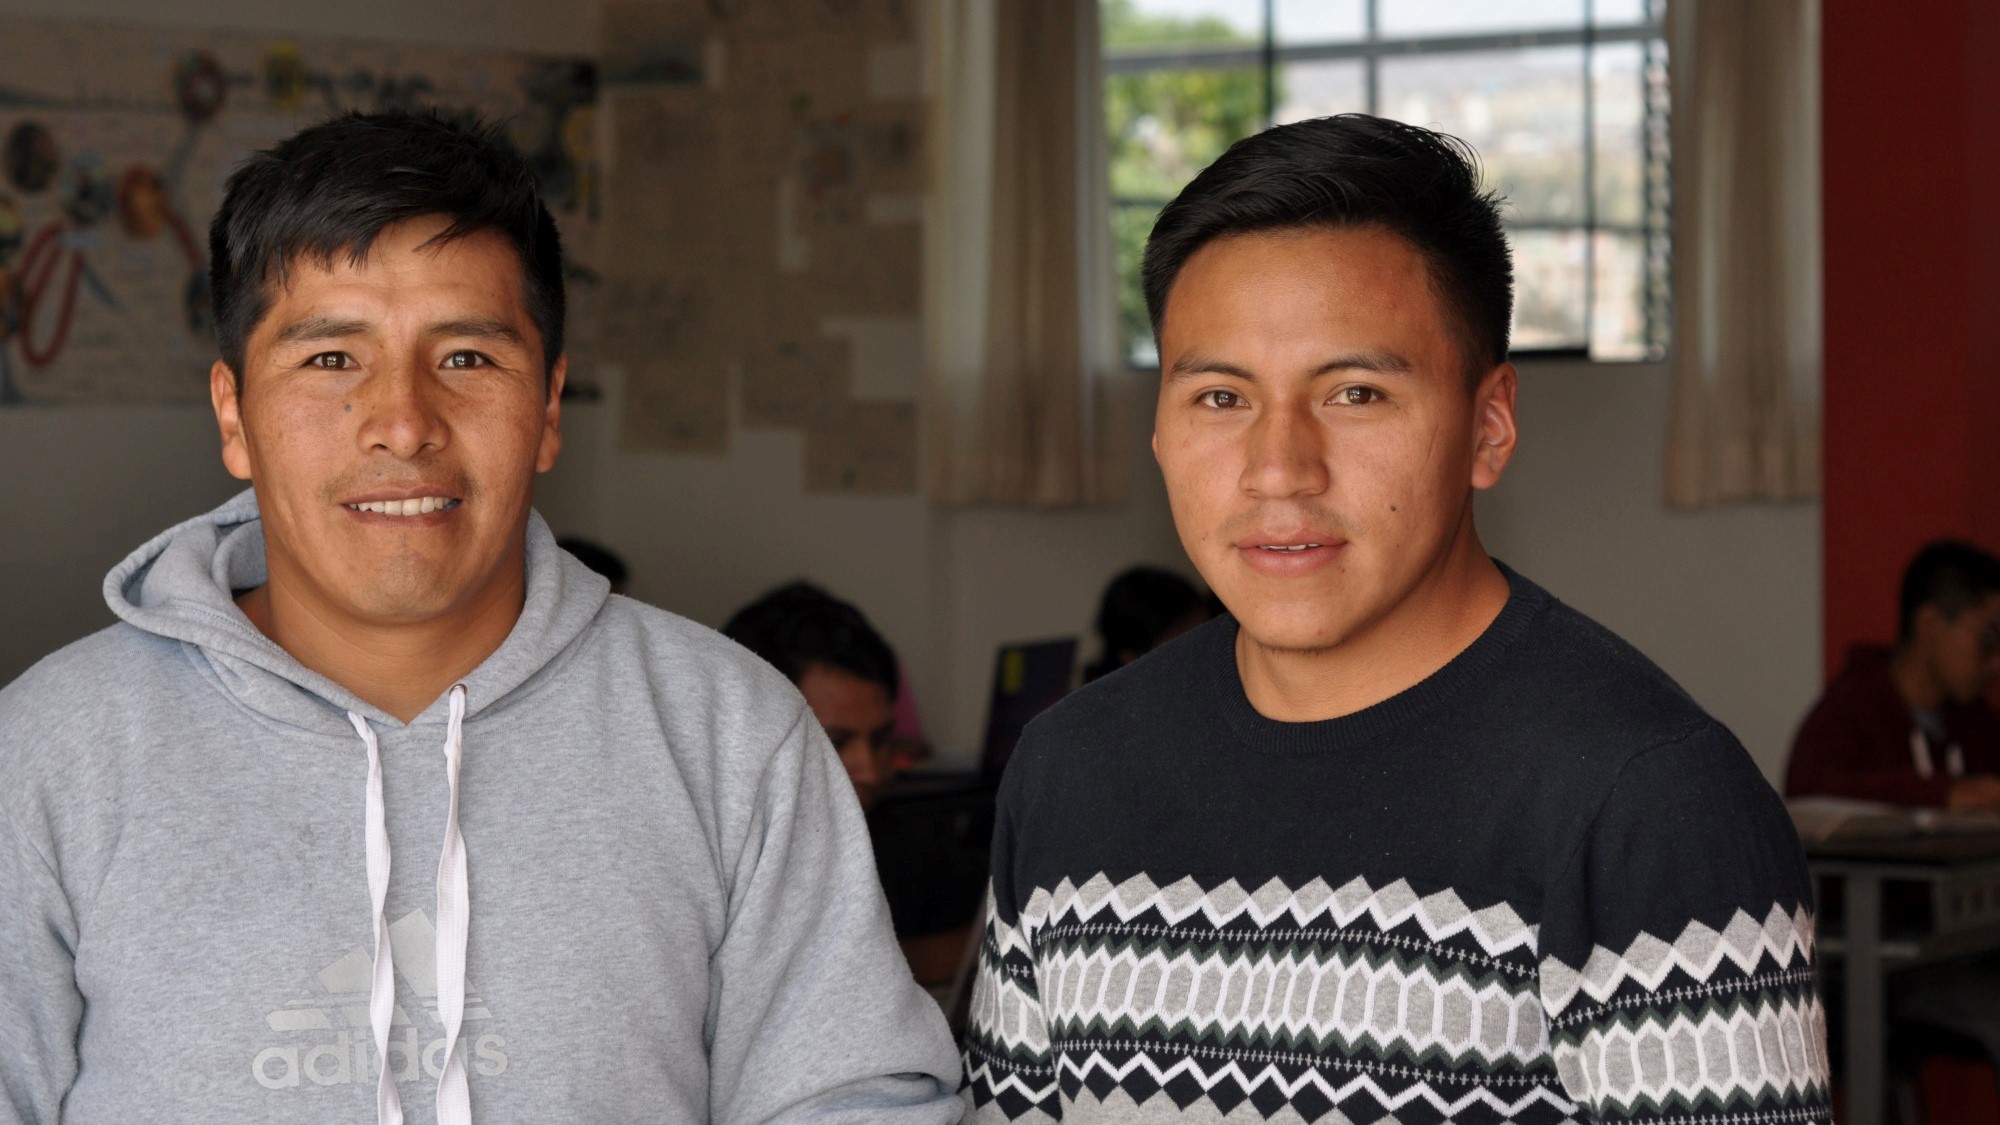 To peruanske menn (studenter)